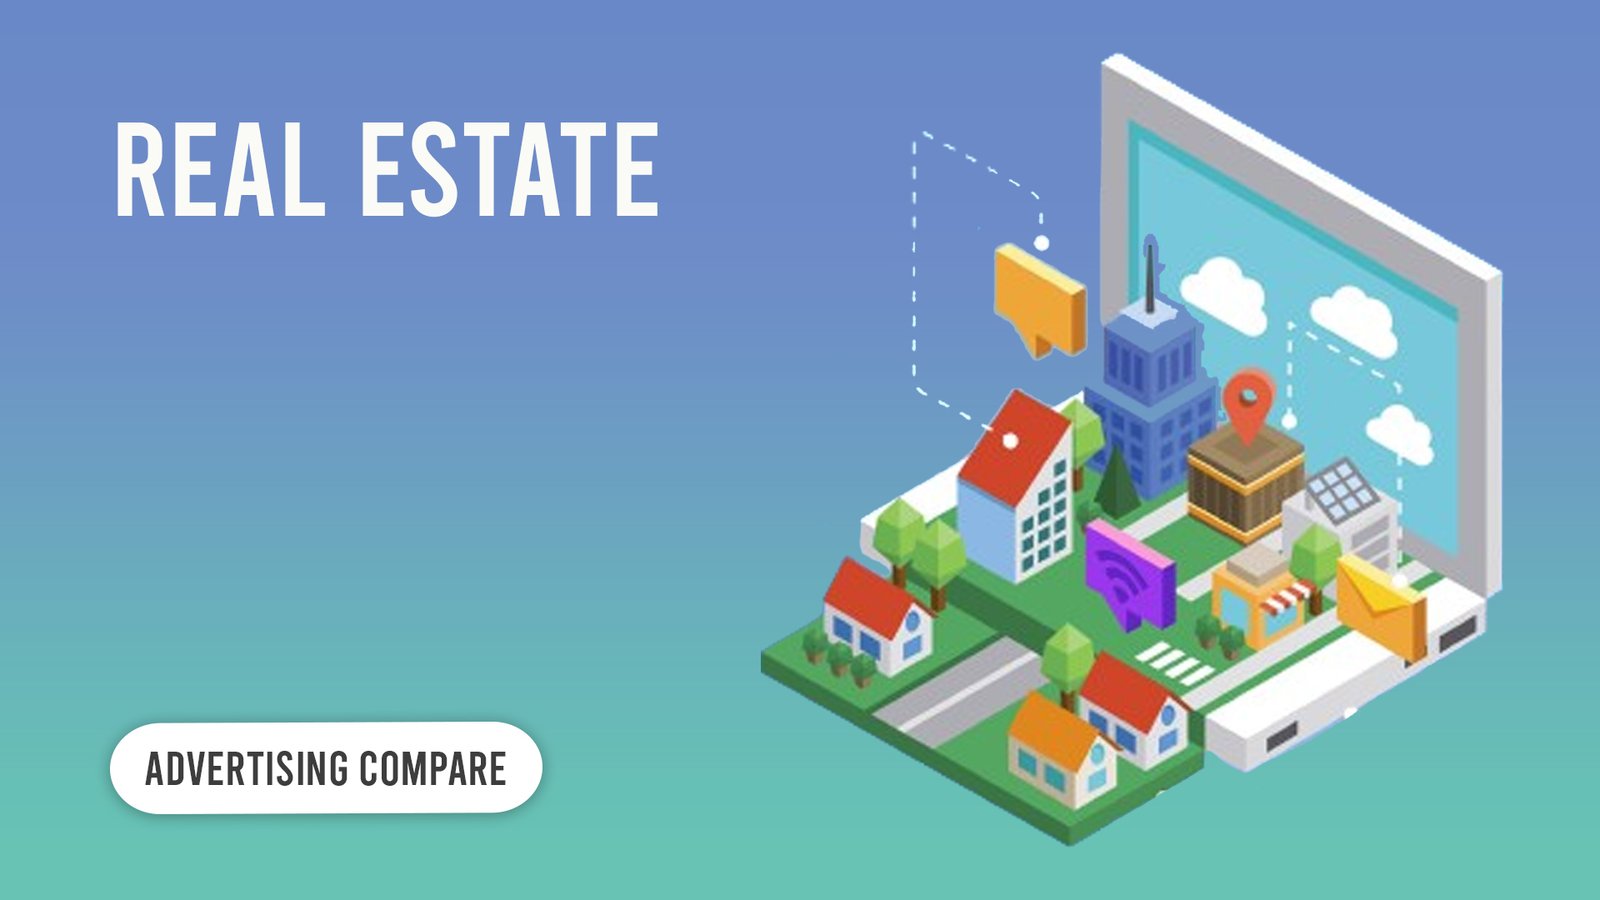 Real Estate www.theadcompare.com